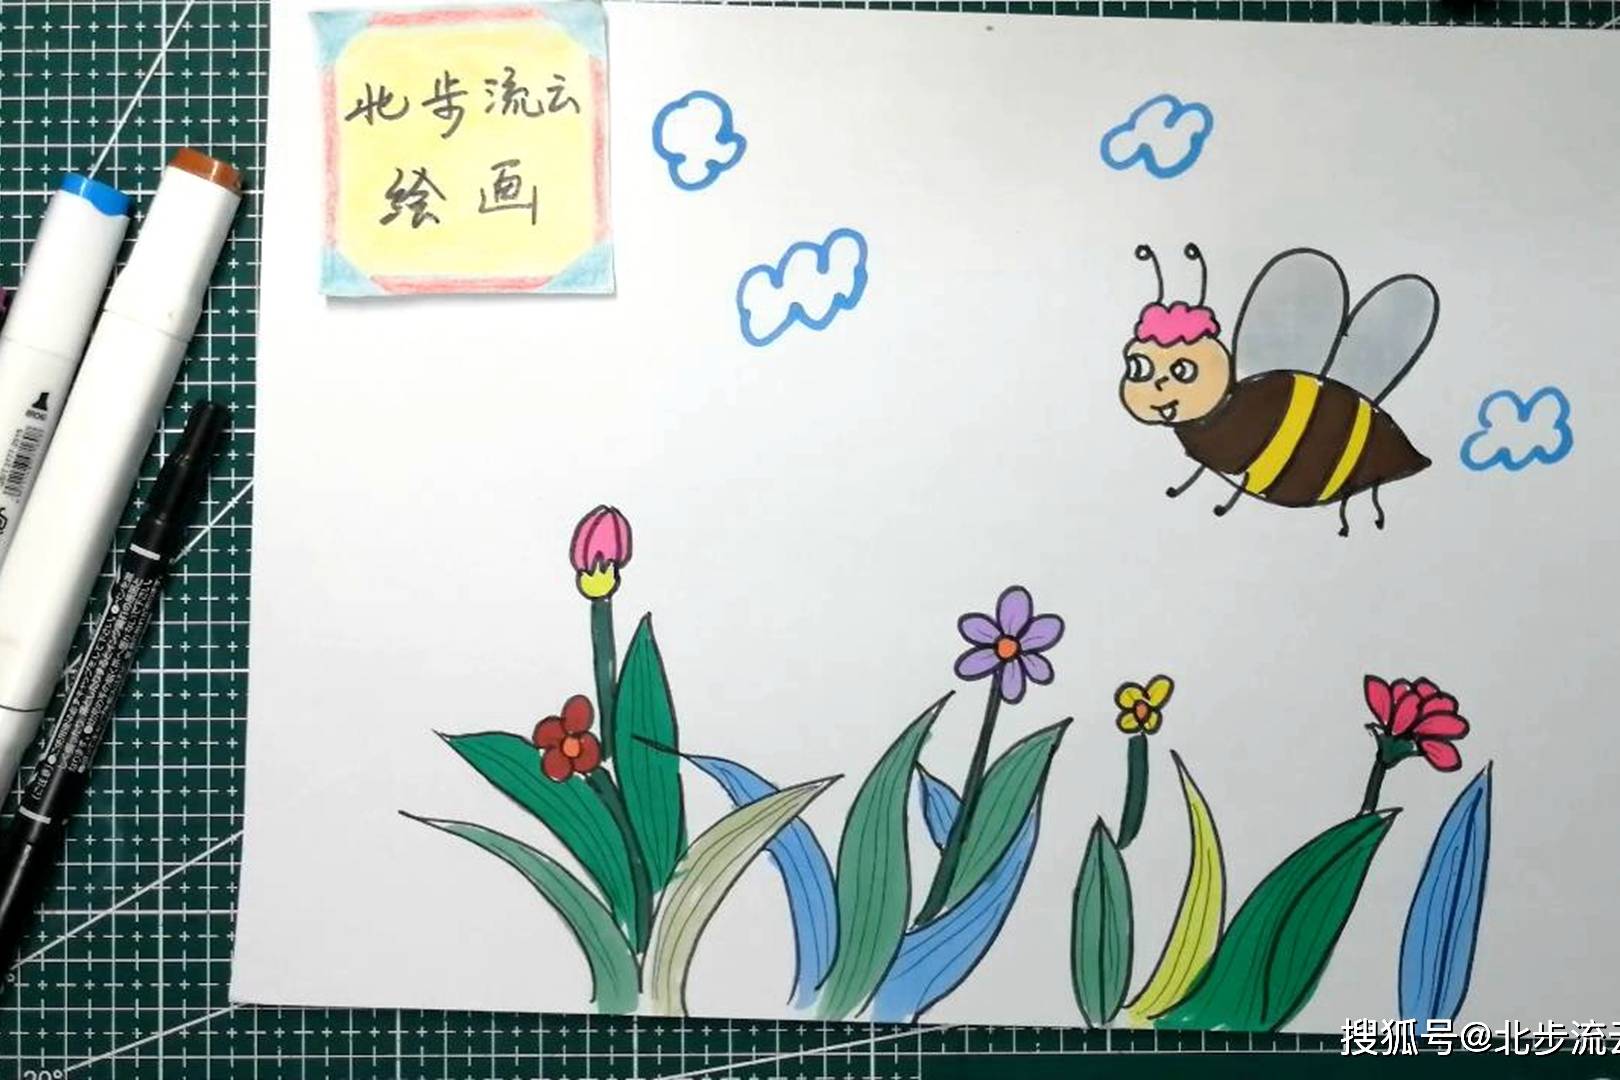 春天到了陪孩子画一幅蜜蜂采蜜的简笔画吧